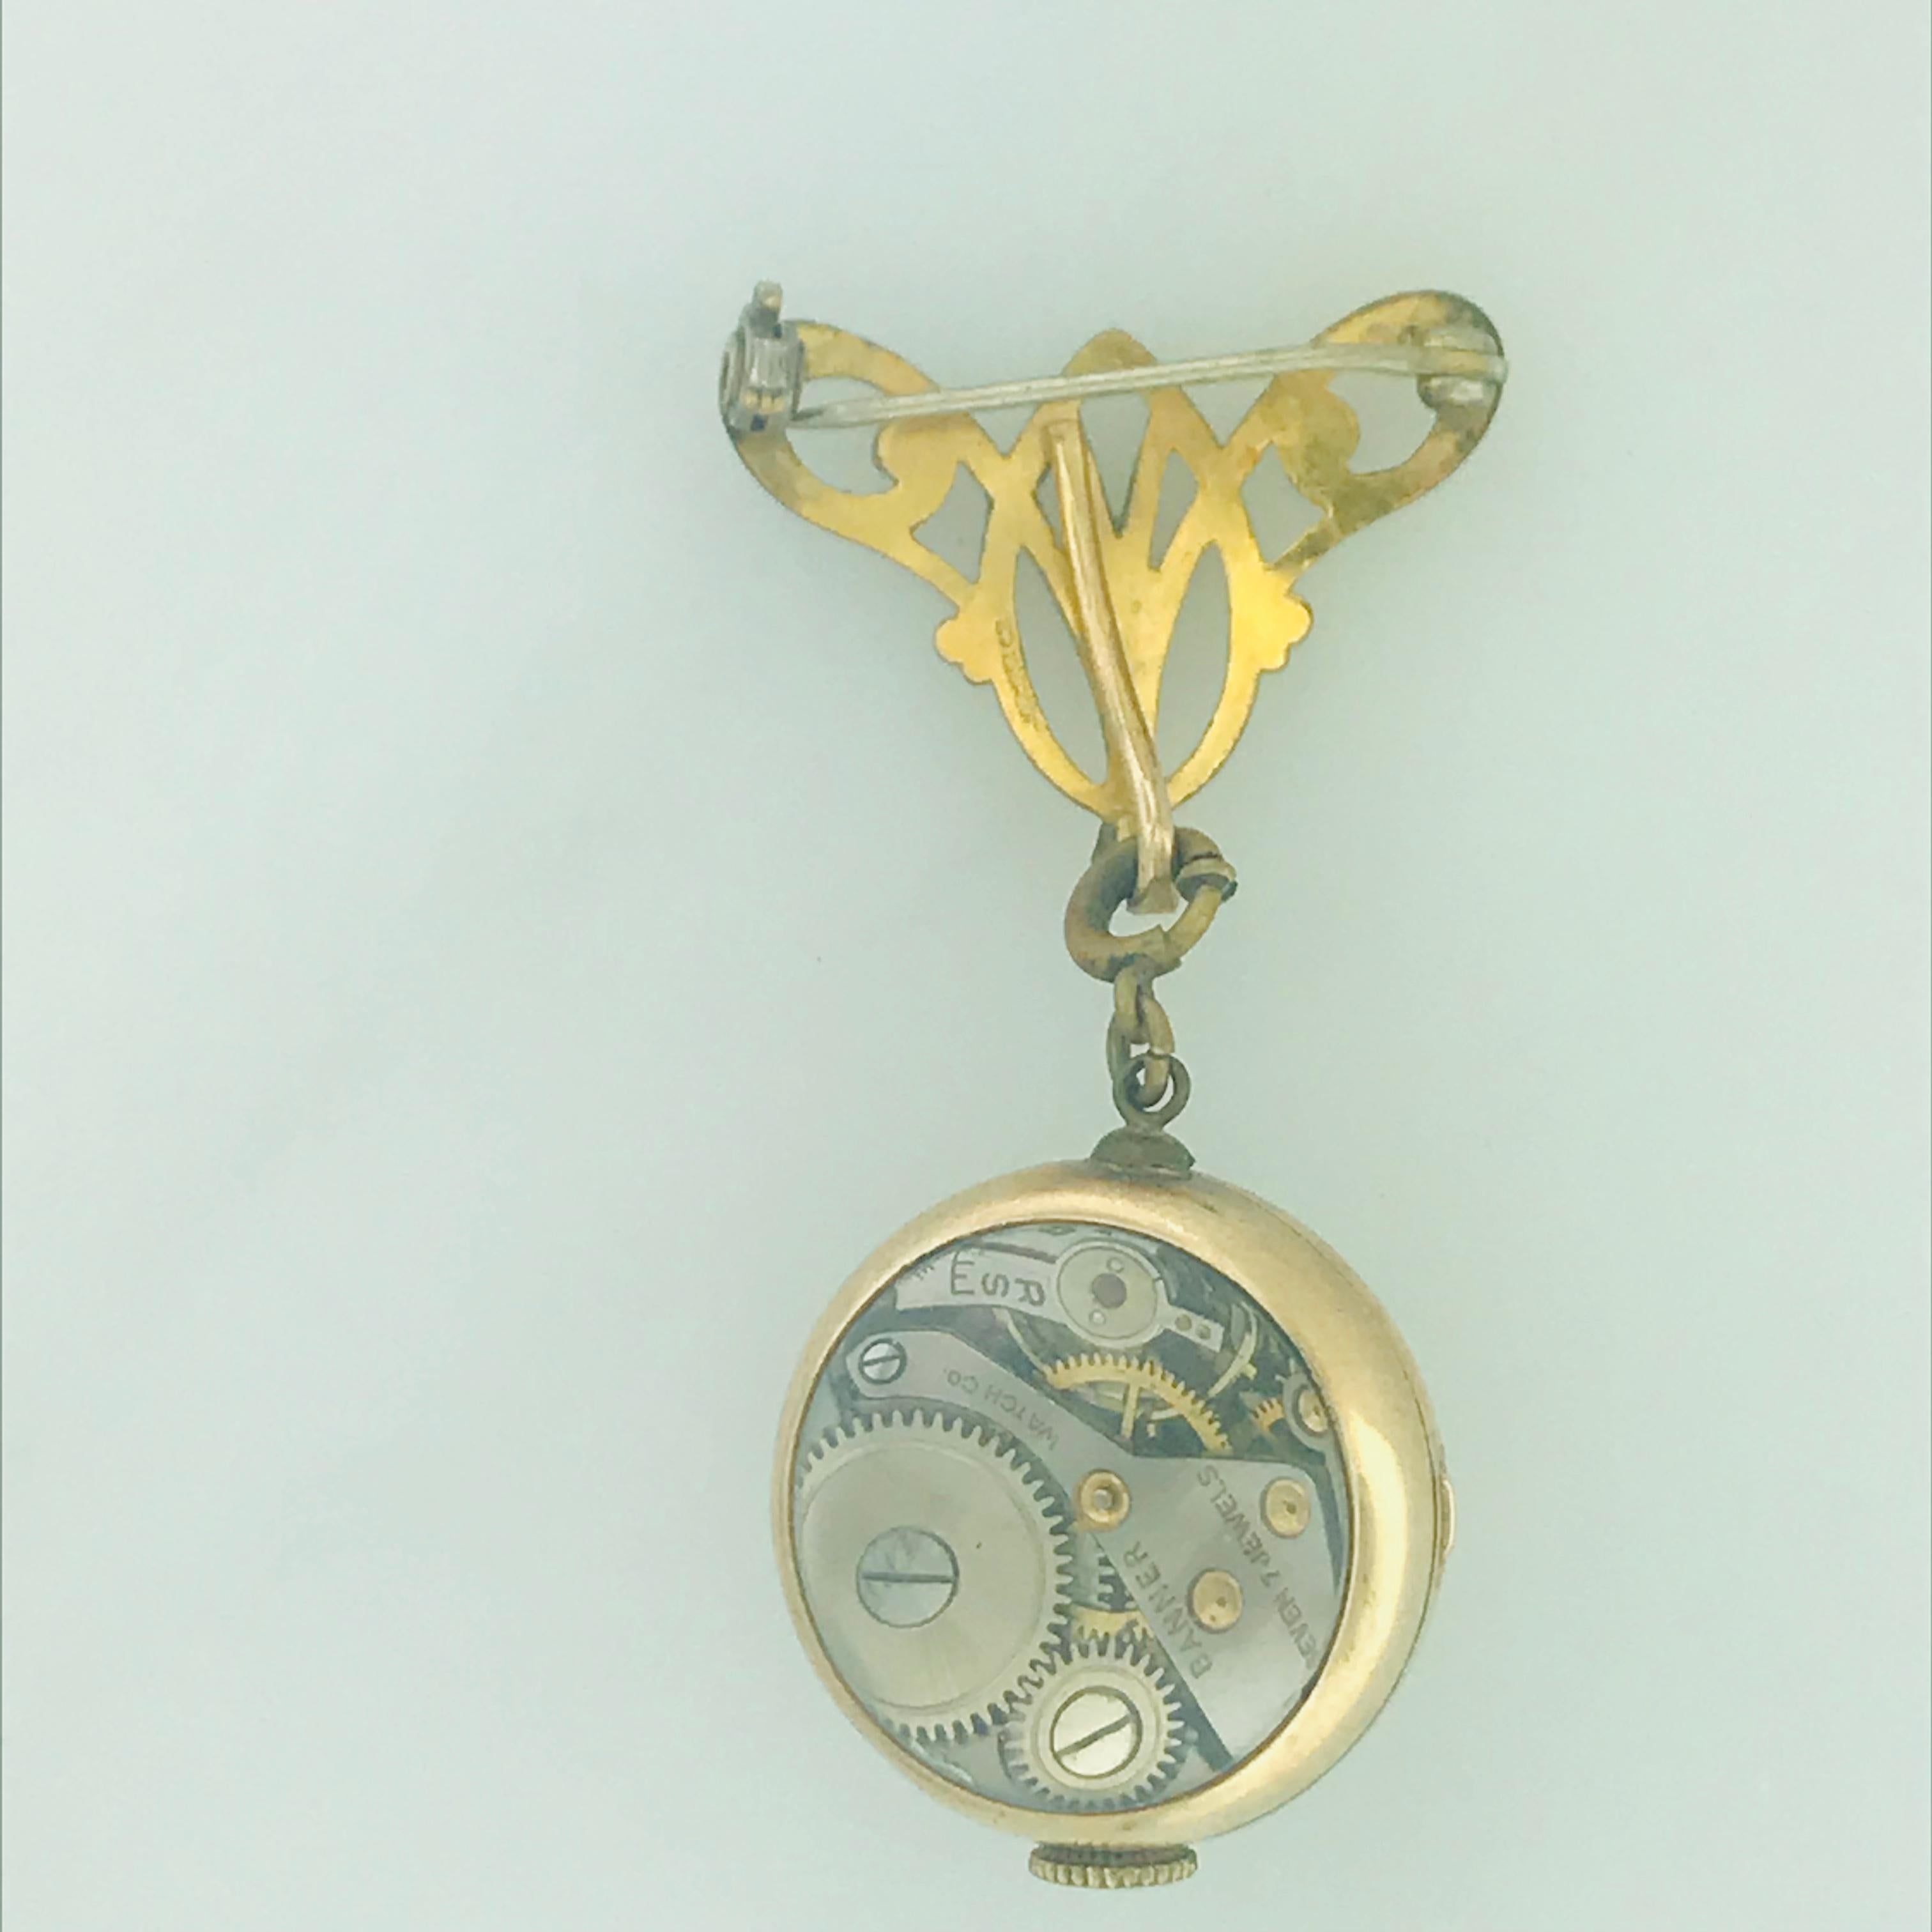 Eine alte Anstecknadel und Uhr, die abnehmbar und anbringbar ist. Dieses Stück ist Vintage und in sehr gutem Zustand. Die Uhr ist eine Schweizer Banner-Uhr mit skelettiertem Boden und 7-steinigem Antrieb. An der Uhr befindet sich ein einfach zu